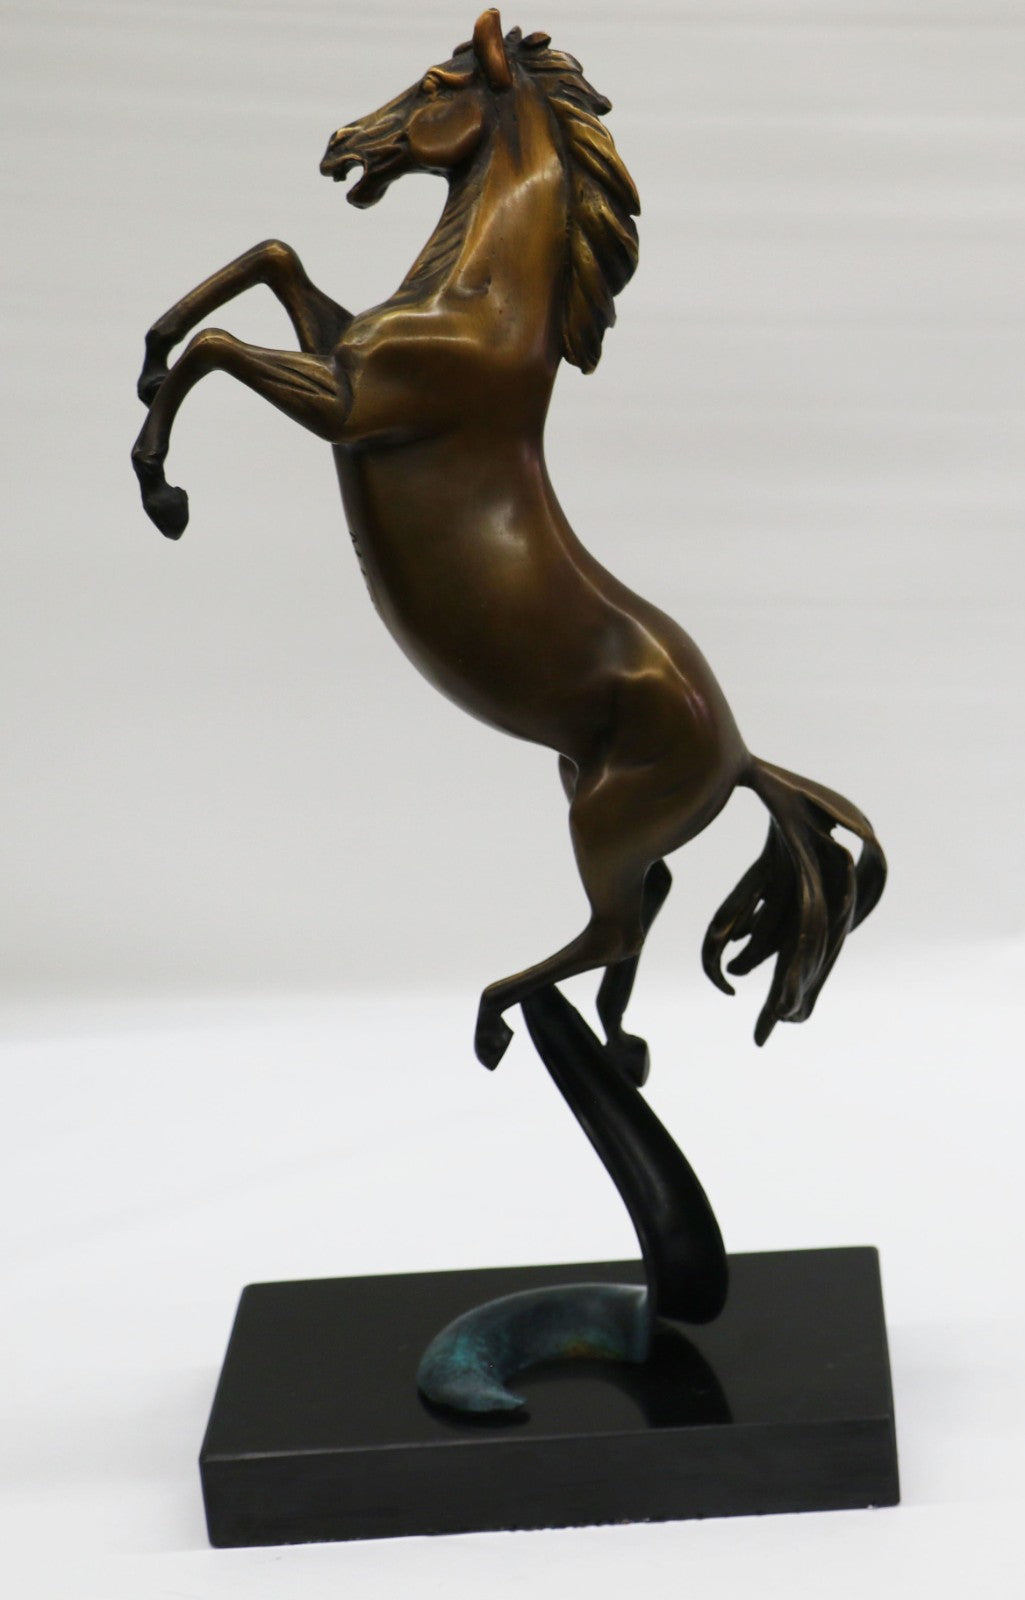 Horse Collectibles Metal Rearing Bronze Wild Sculptures Pony Art Equine Deal